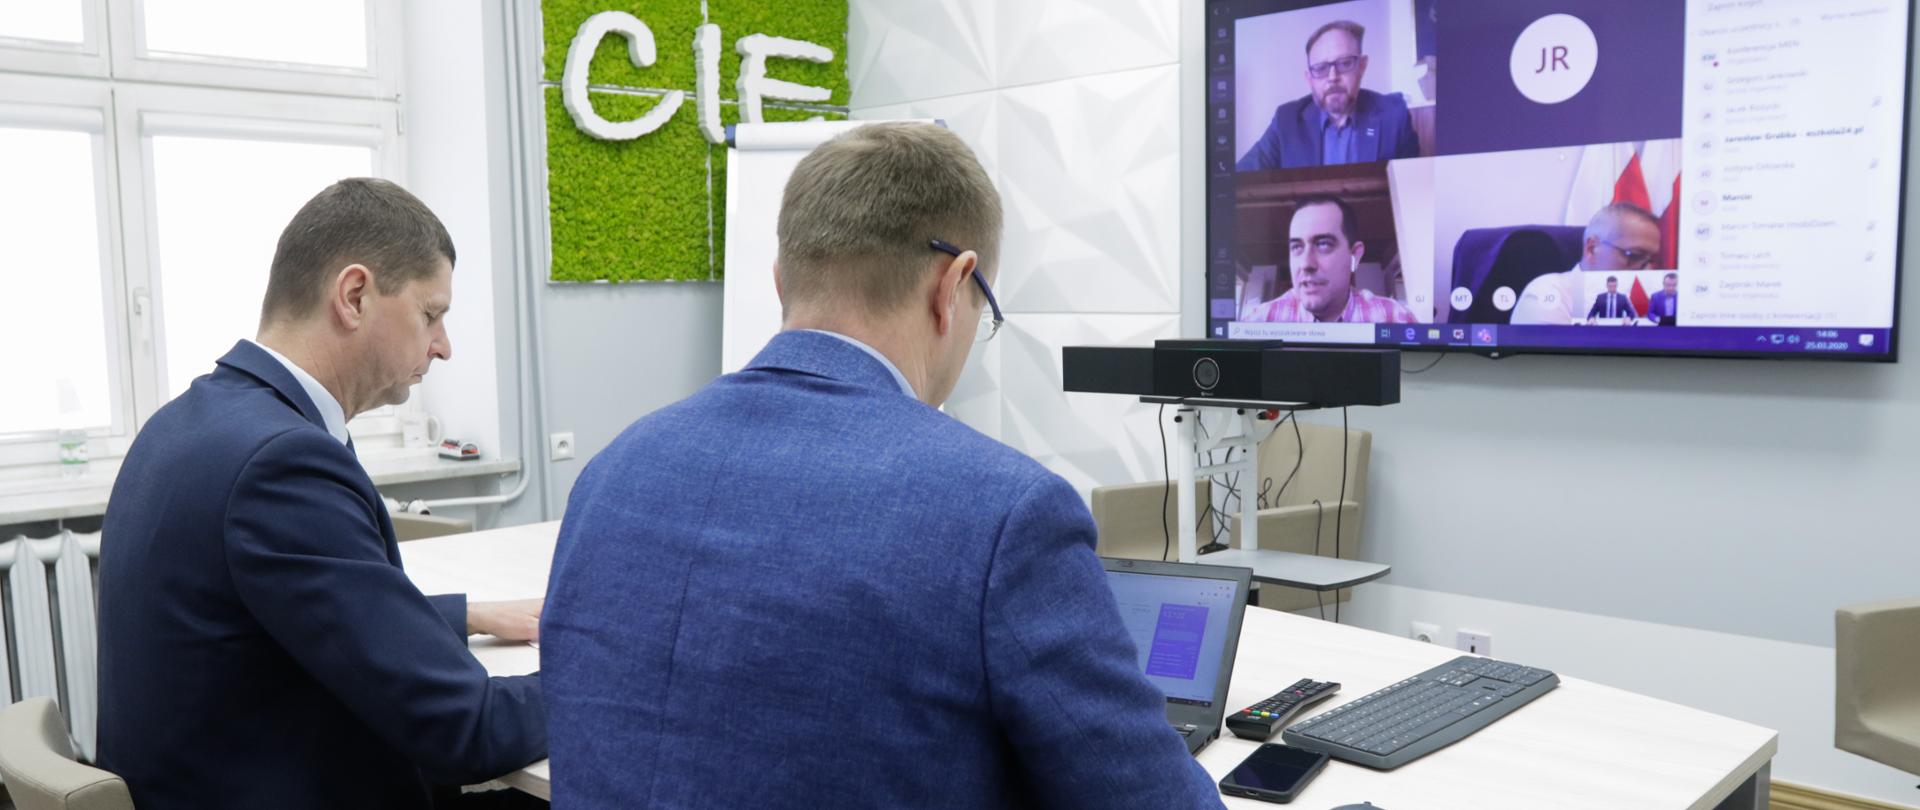 Dwóch mężczyzn w garniturach siedzi przy białym stole. W tle ekran z wideokonferencją.